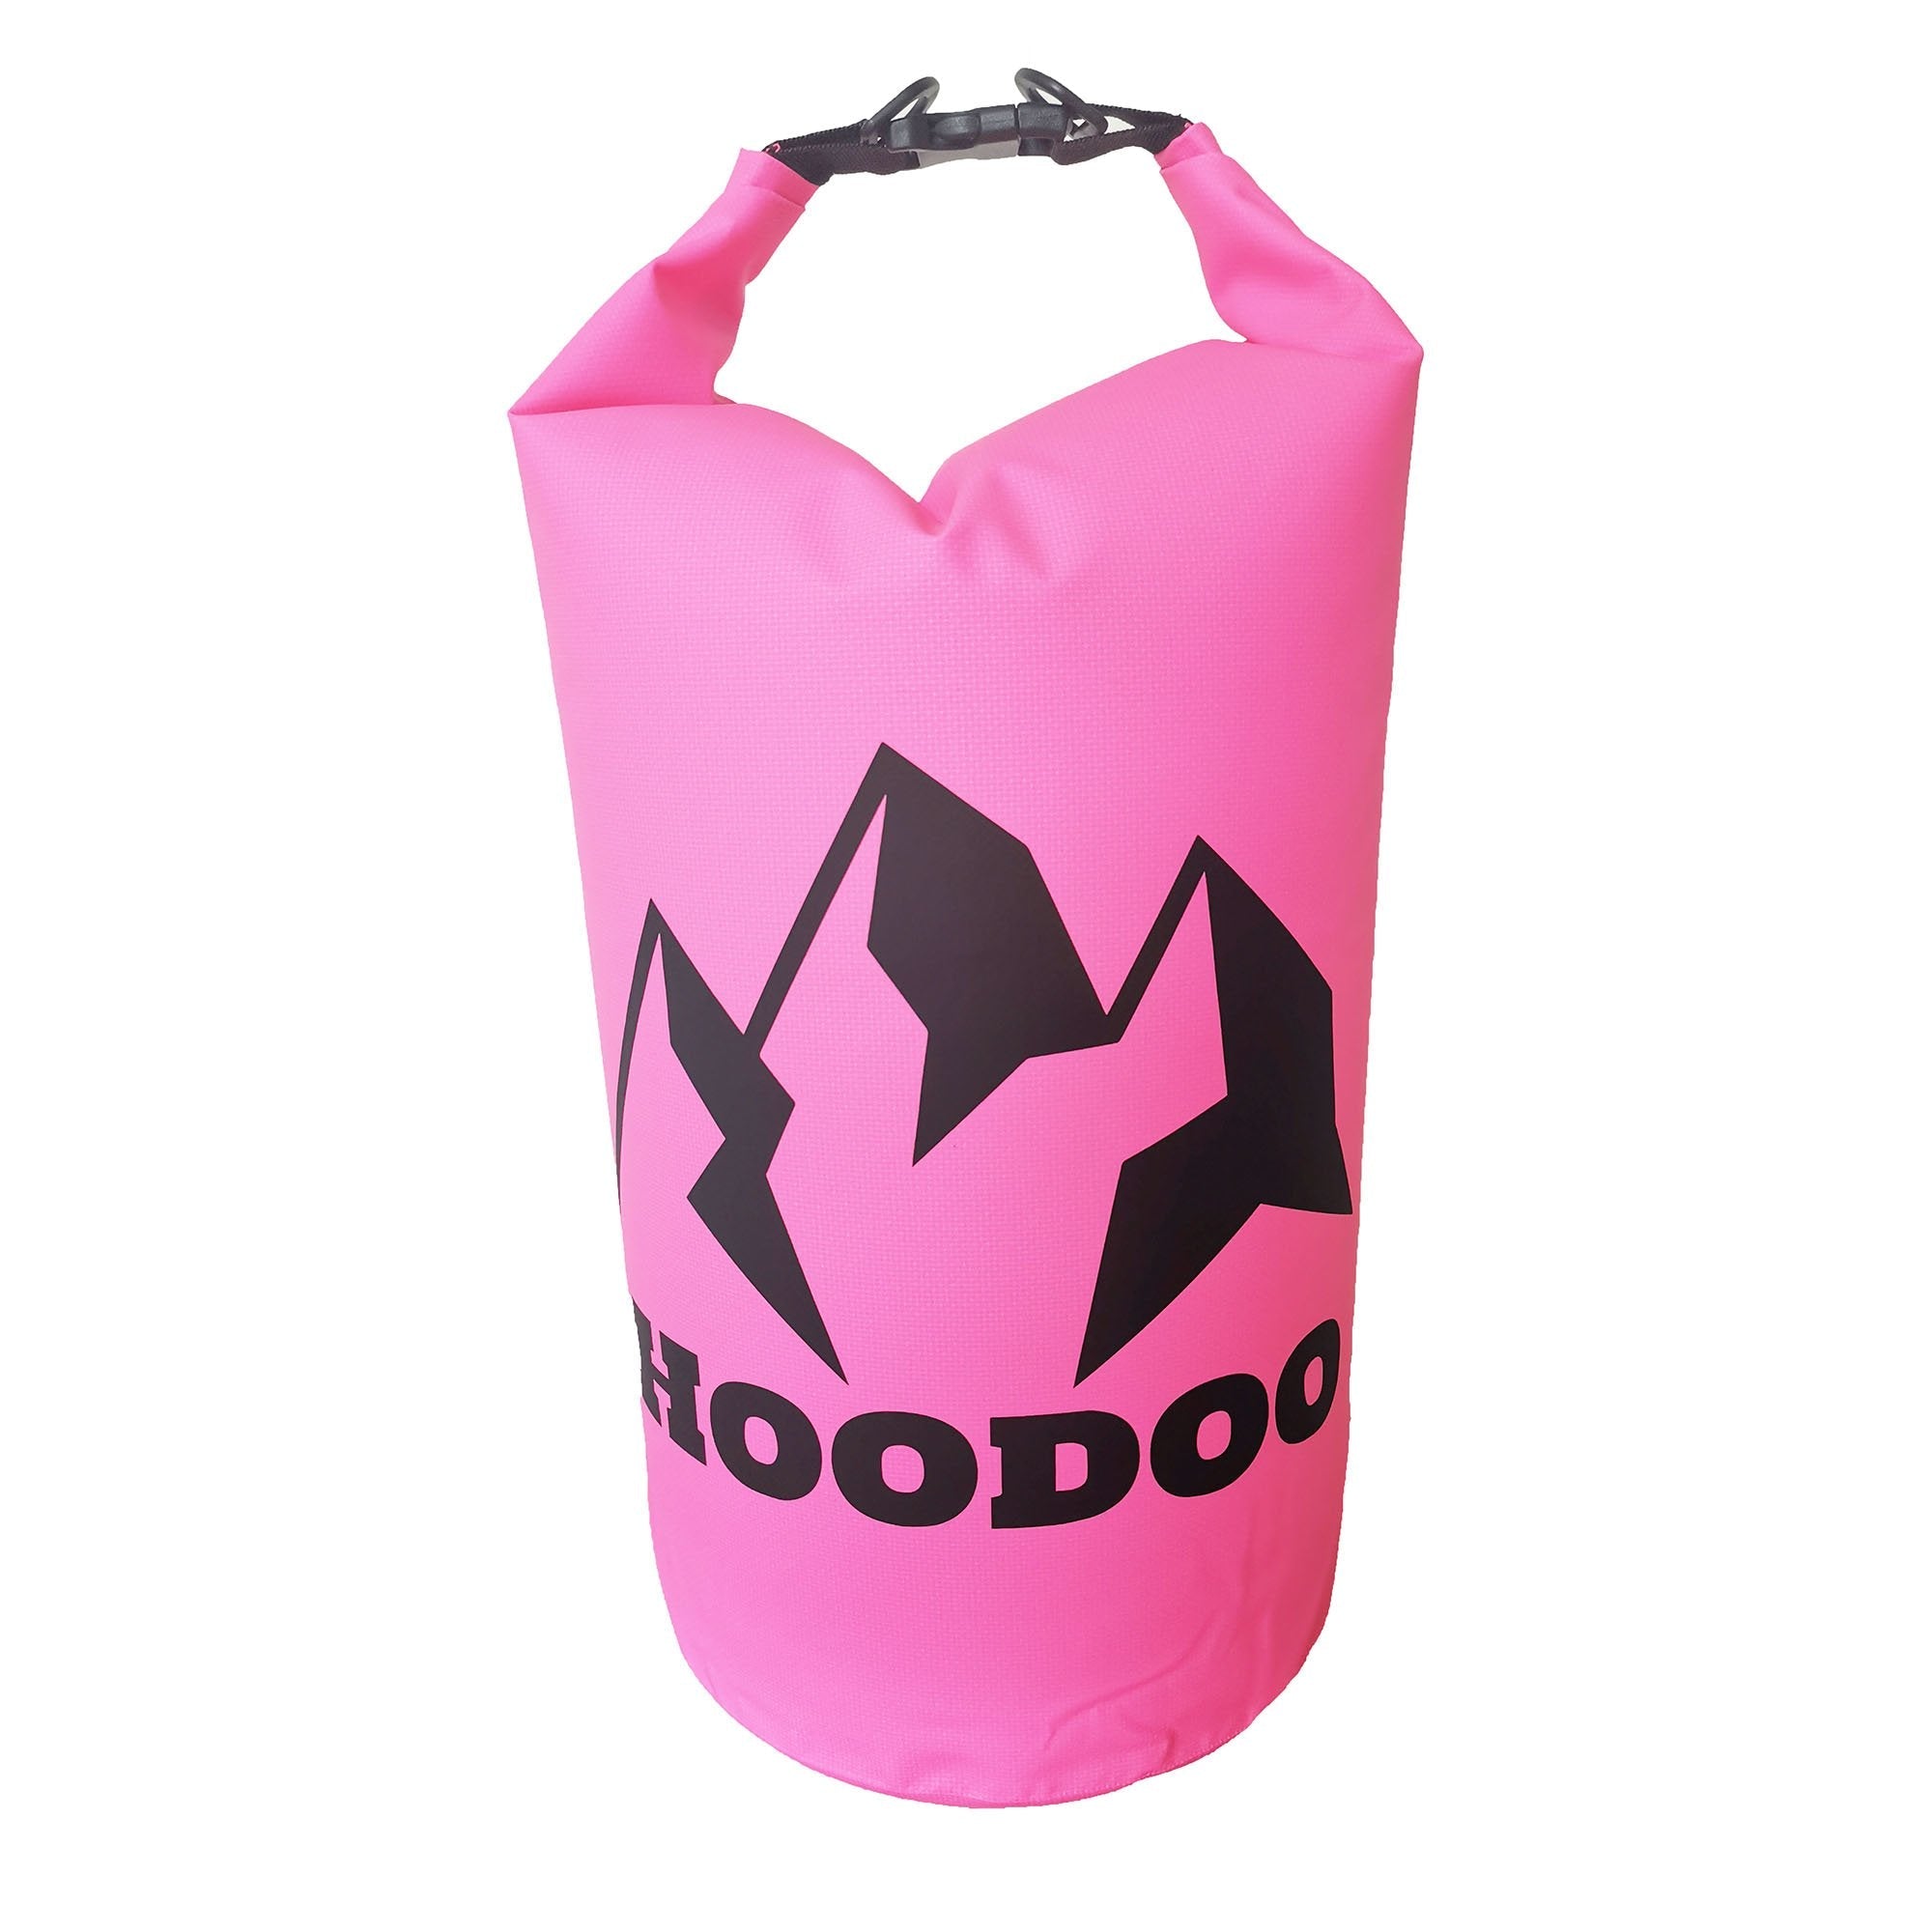 Hoodoo 10L Waterproof Dry Bag Dry Bag Hoodoo Sports Pink 